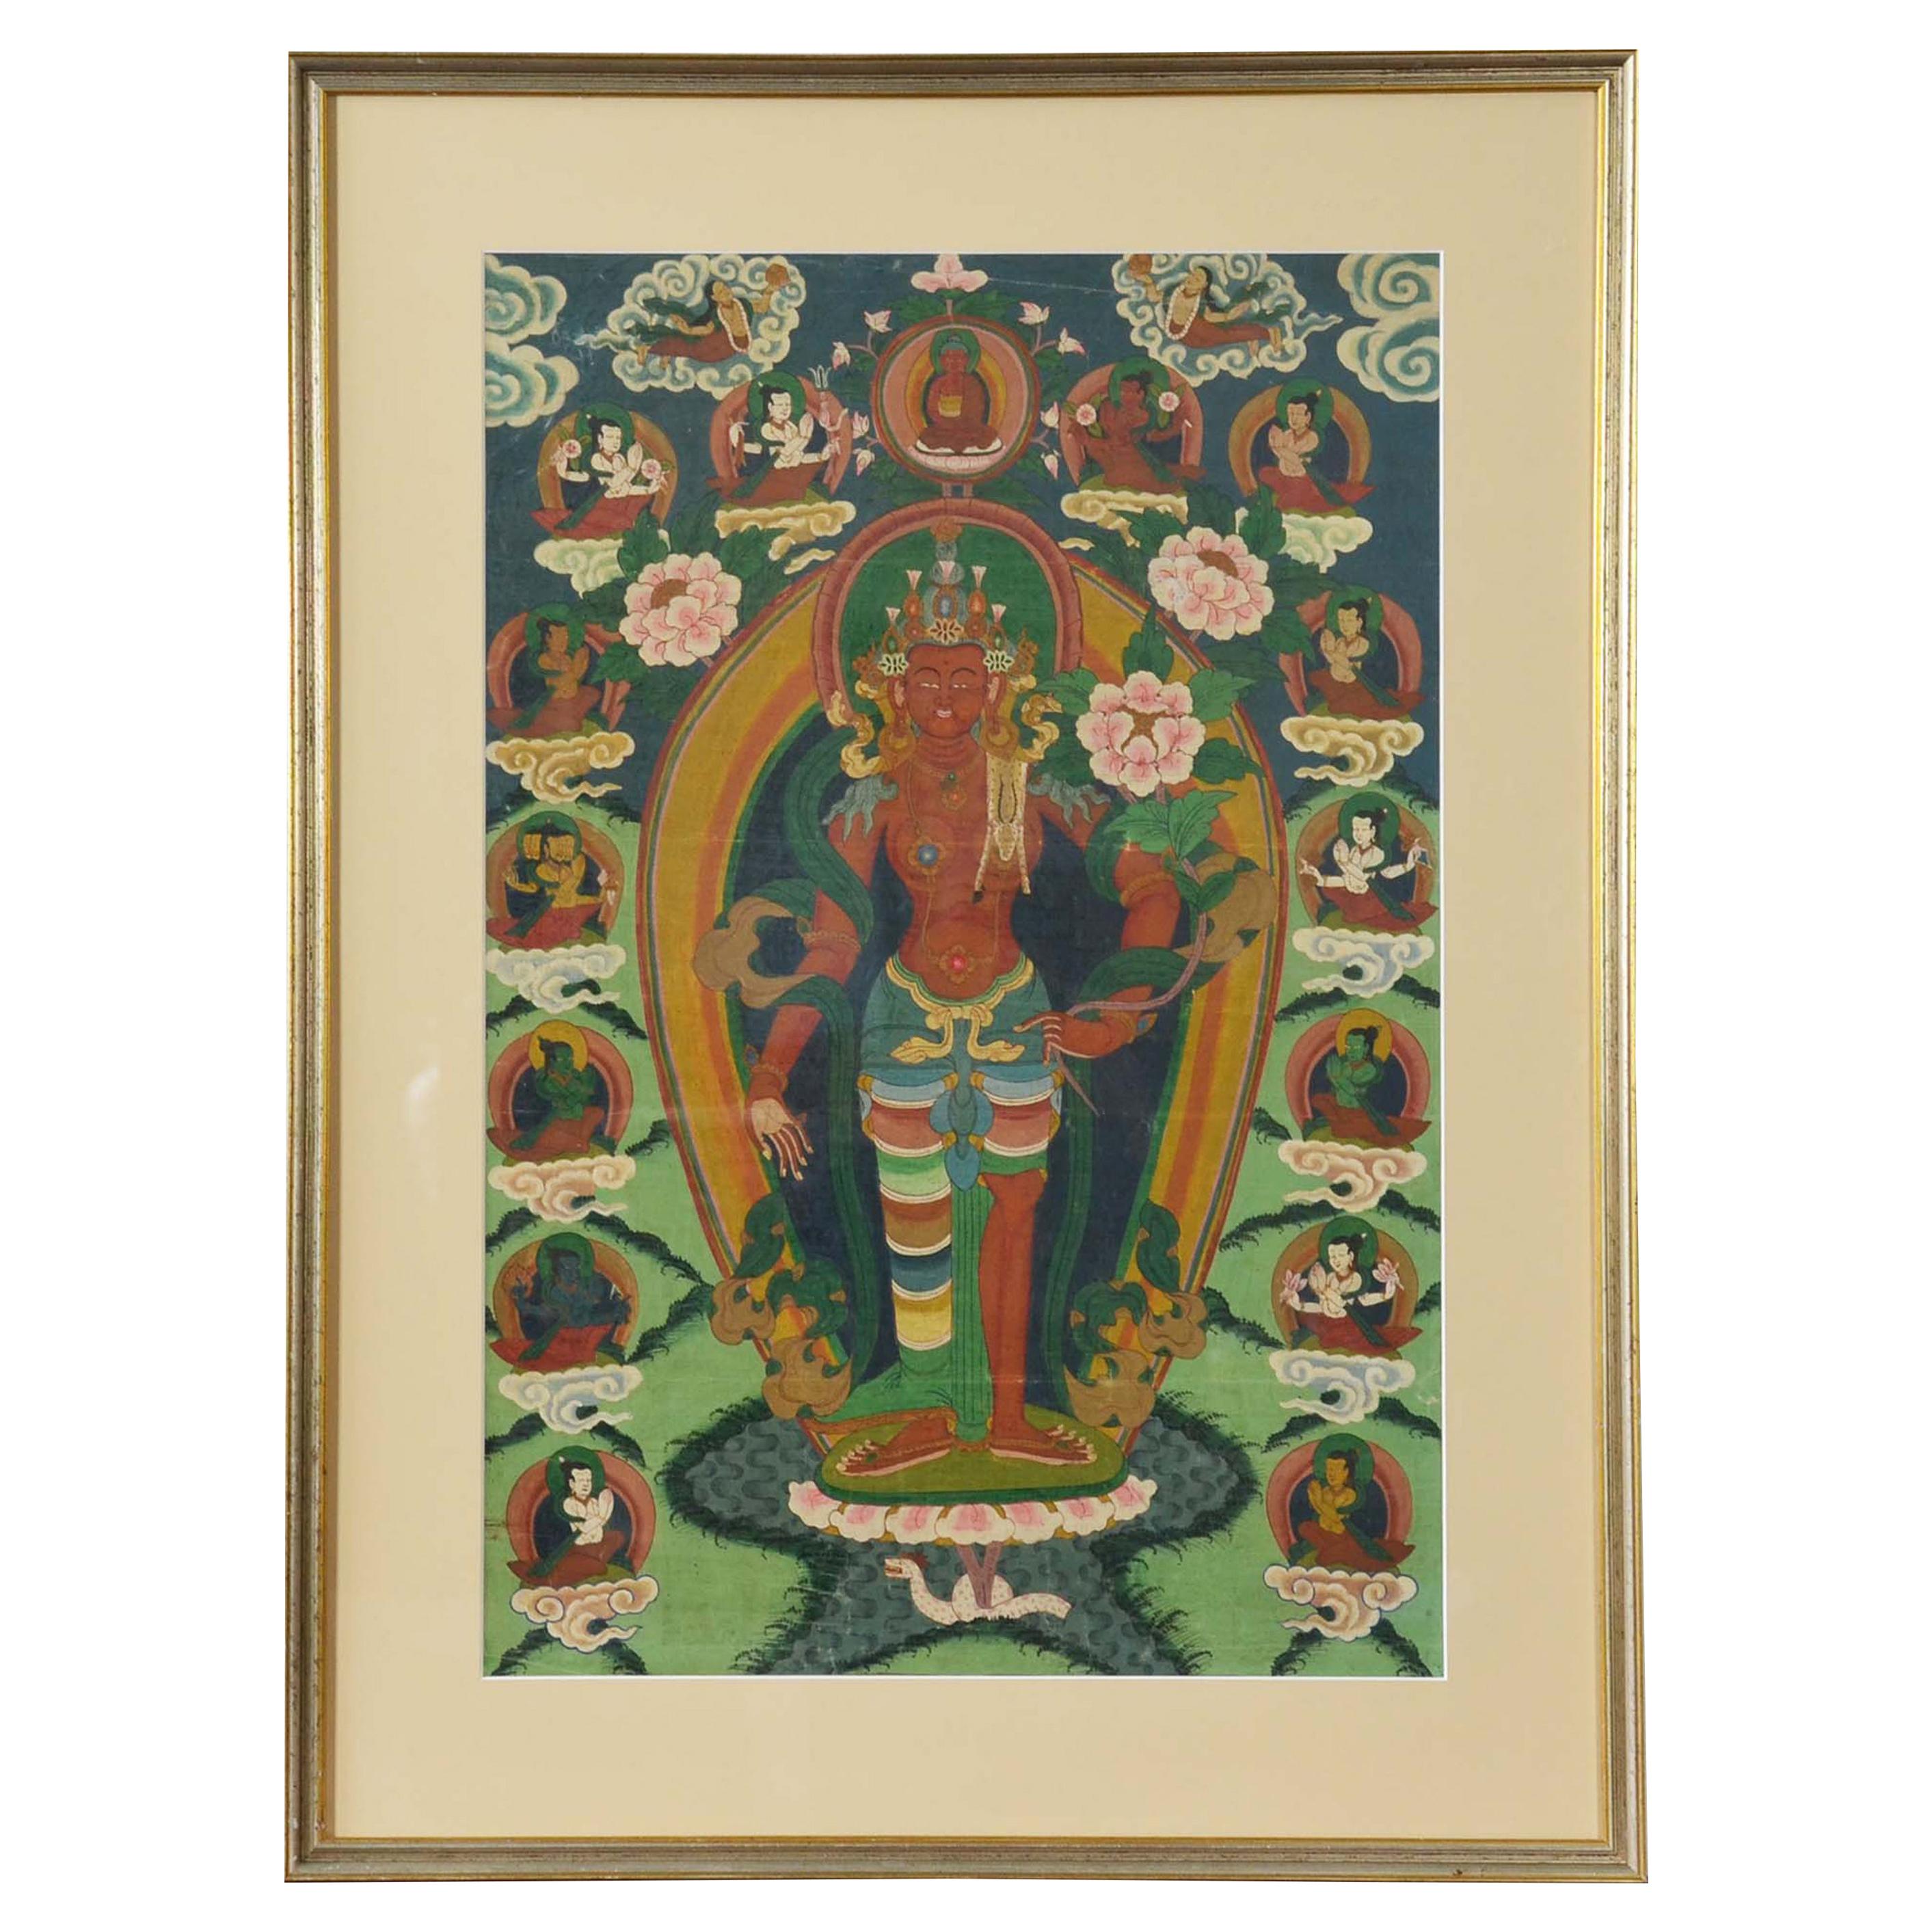 Déité hindoue cérémonielle indienne peinte à la main sur toile dans un cadre doré